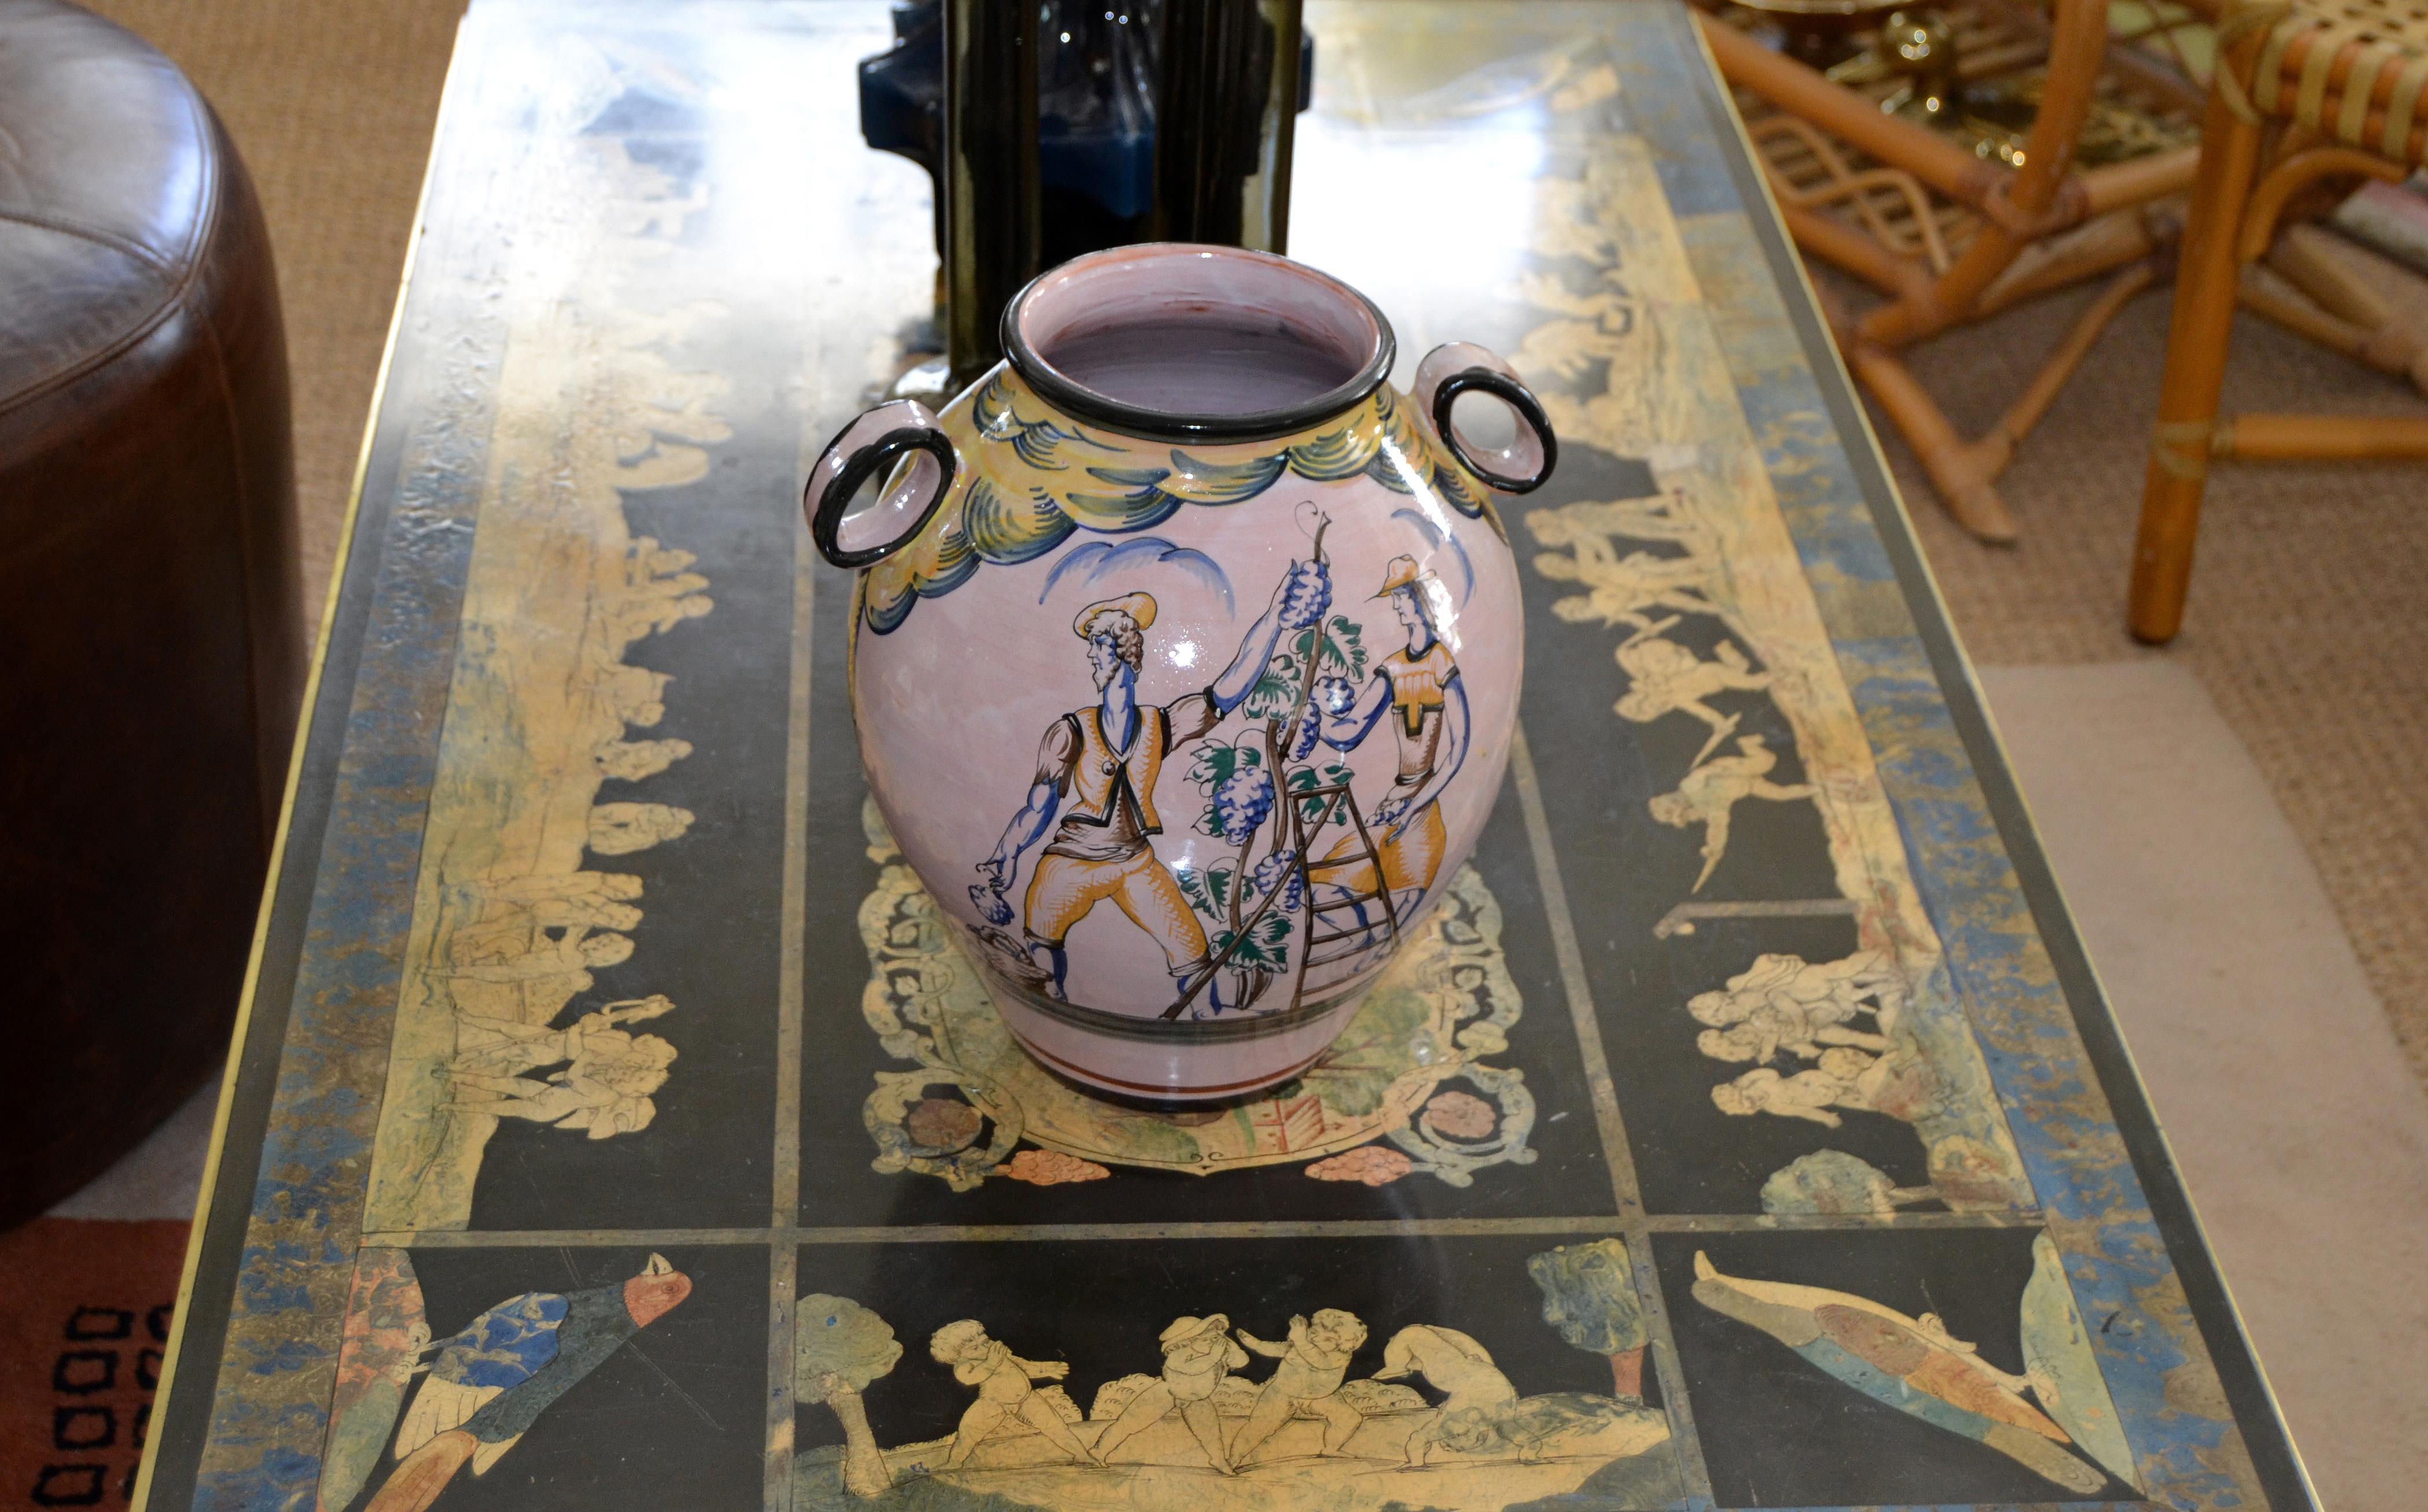 Vase ou récipient en terre cuite vernissée et peinte à la main, vers 1979, en provenance d'Italie.
Le vase représente deux motifs différents, d'un côté deux hommes portant une grappe de raisin et de l'autre des hommes cueillant du raisin.
Le vase